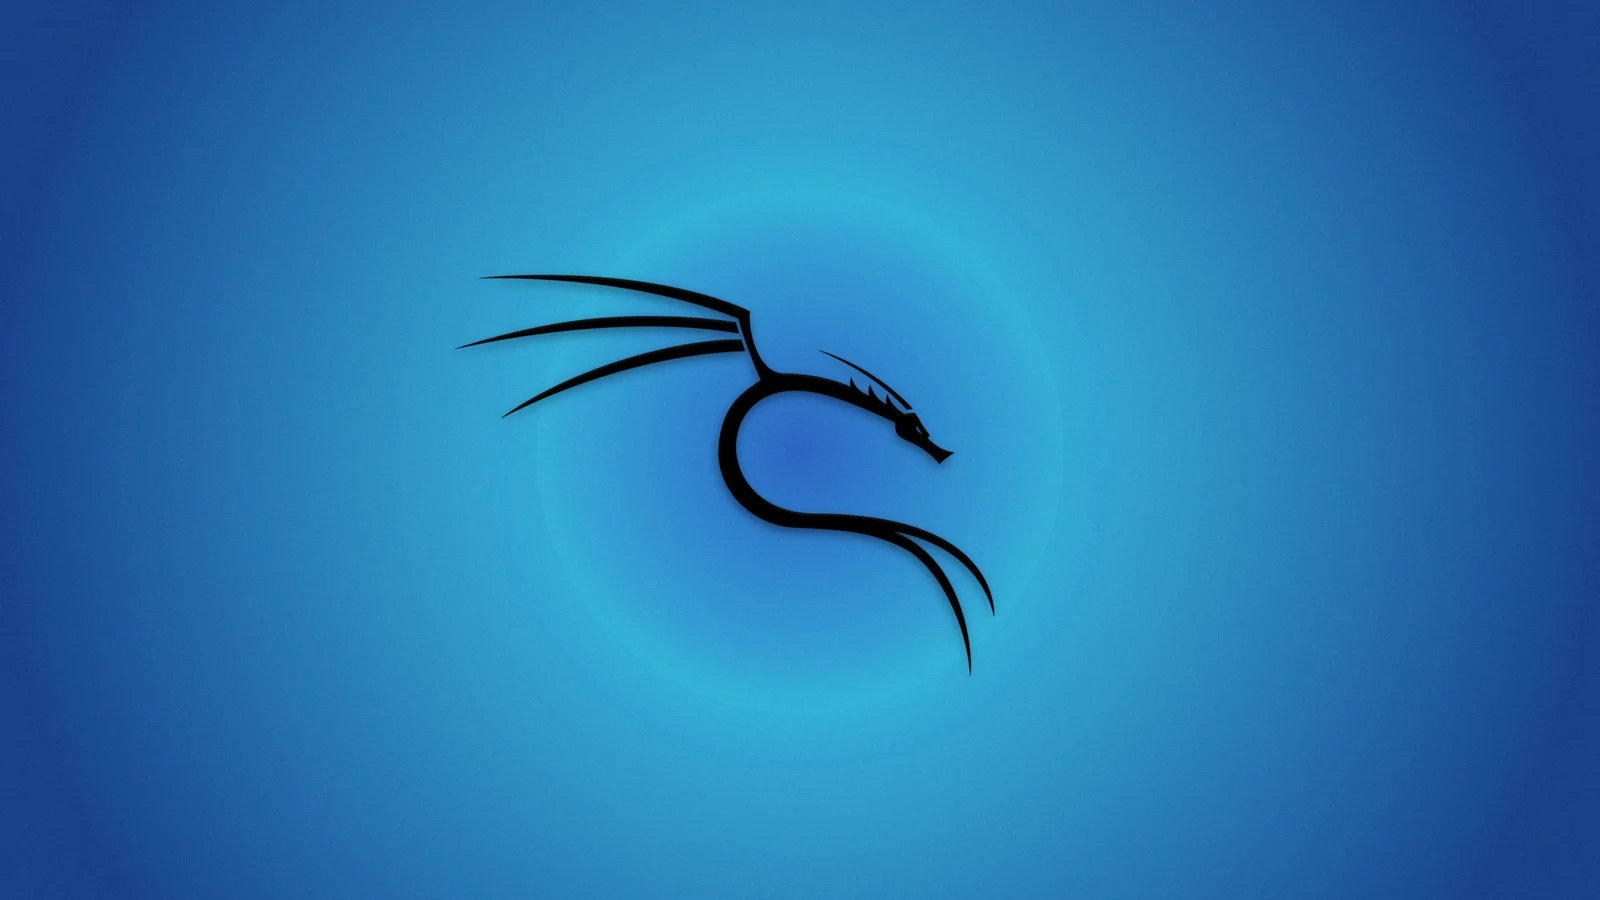 Tải về trọn bộ Wallpaper 4k Kali Linux đẹp nhất cho desktop của bạn